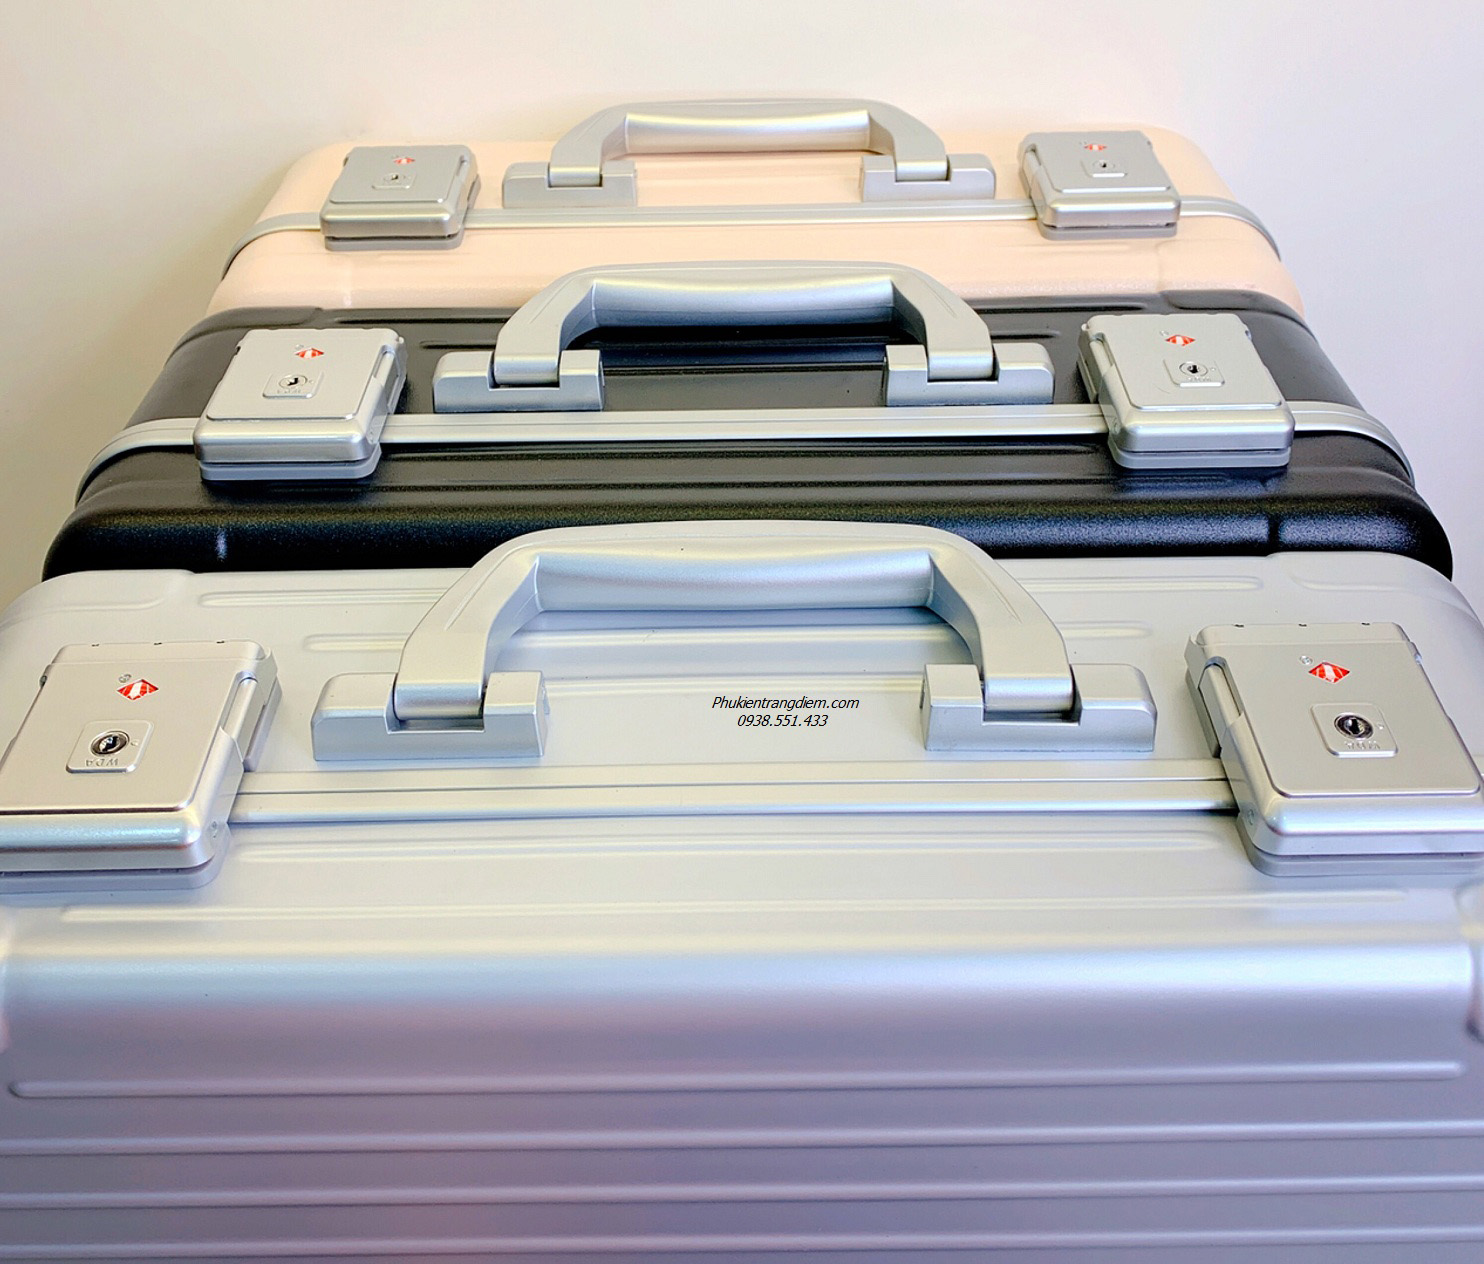 cốp vali trang điểm nhiều ngăn da nhám 3 màu cao cấp có gương và đèn